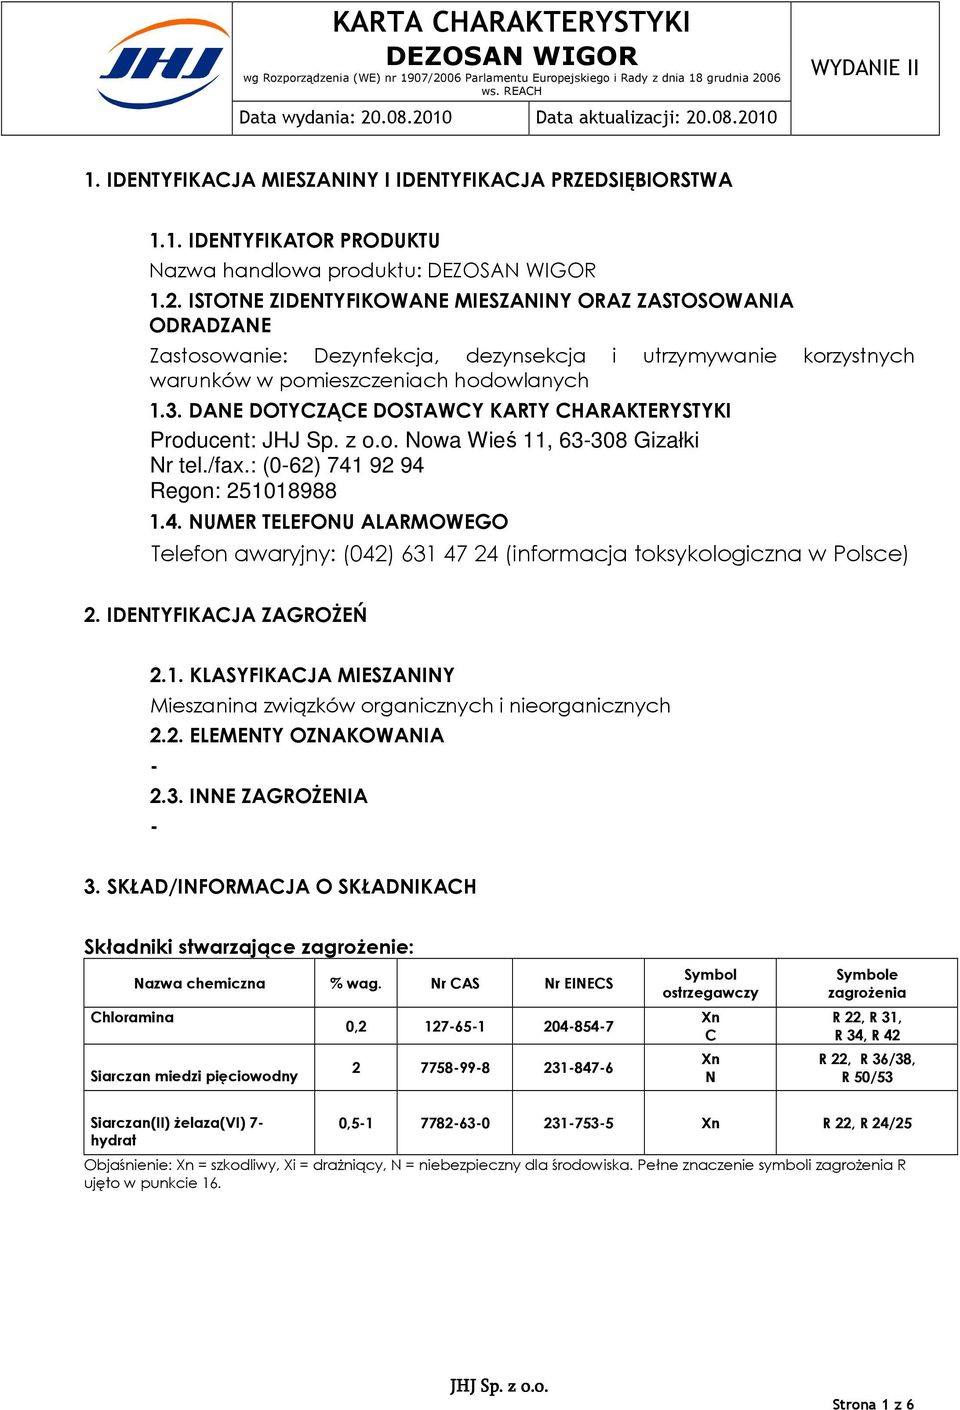 DANE DOTYCZĄCE DOSTAWCY KARTY CHARAKTERYSTYKI Producent: Nowa Wieś 11, 63308 Gizałki Nr tel./fax.: (062) 741